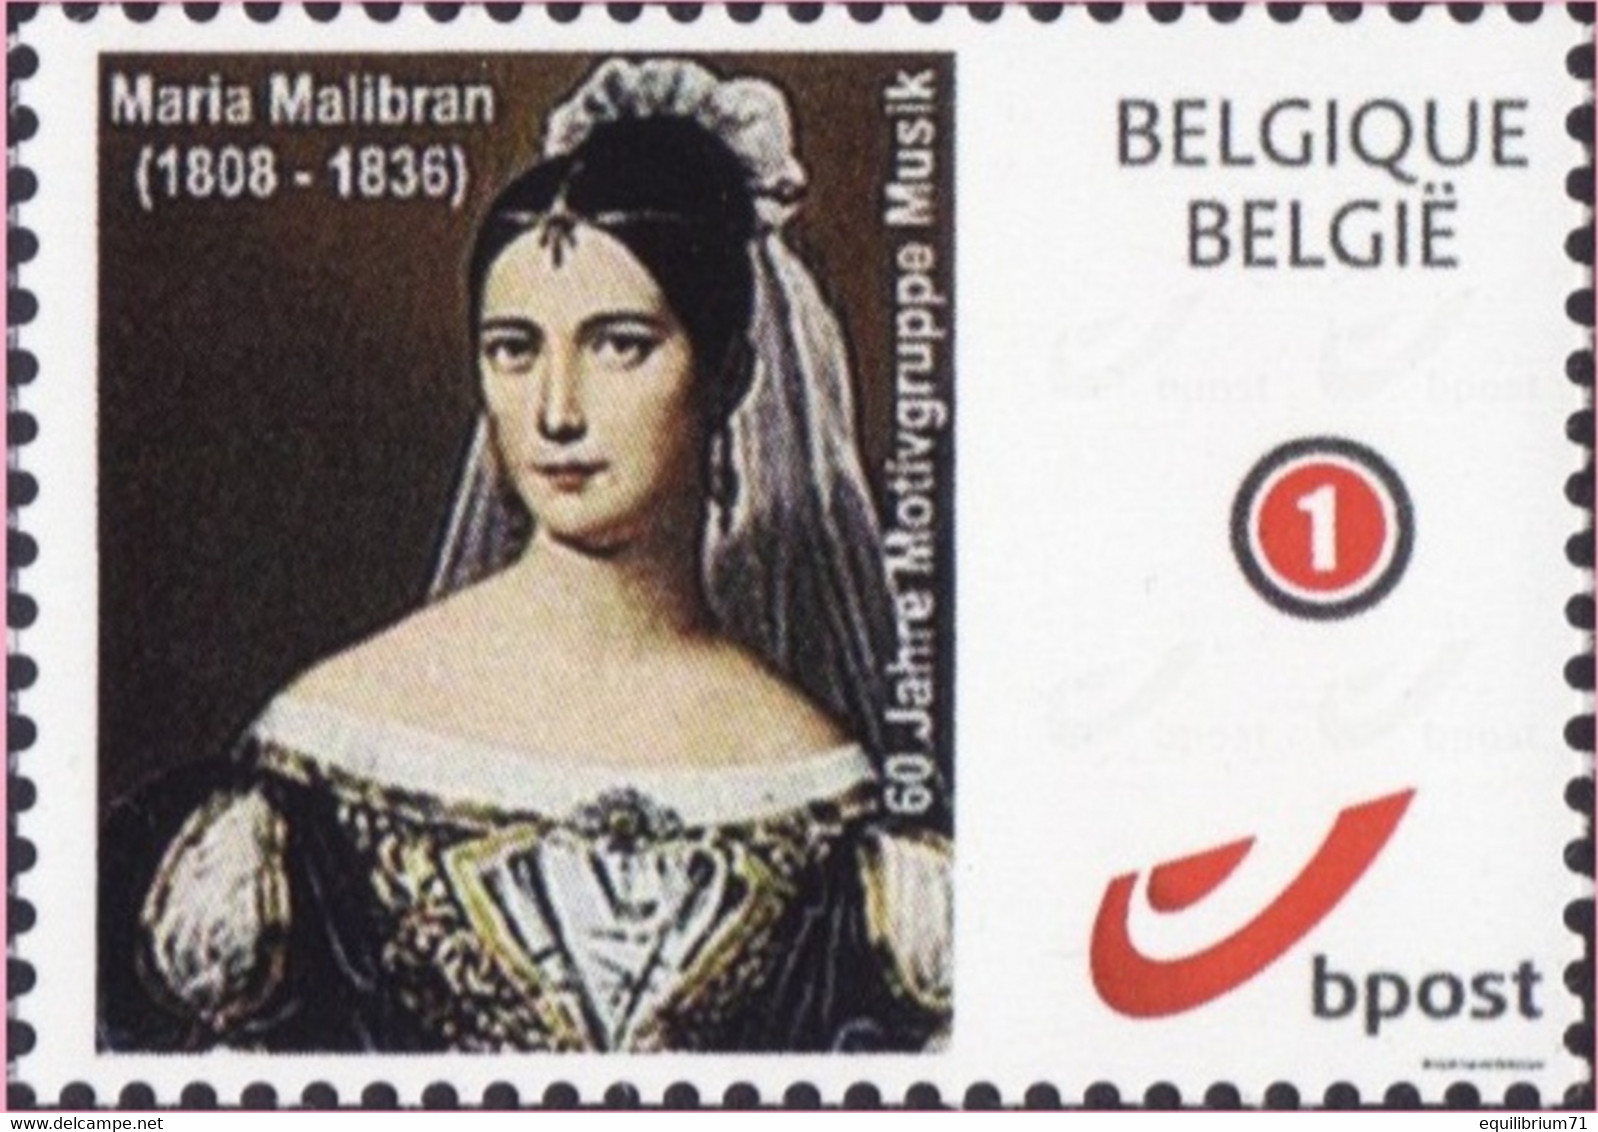 DUOSTAMP** / MYSTAMP** - Maria Malibran 1808 - 1836 "La Malibran" - Artiste Lyrique - Mezzo-soprano - Mint